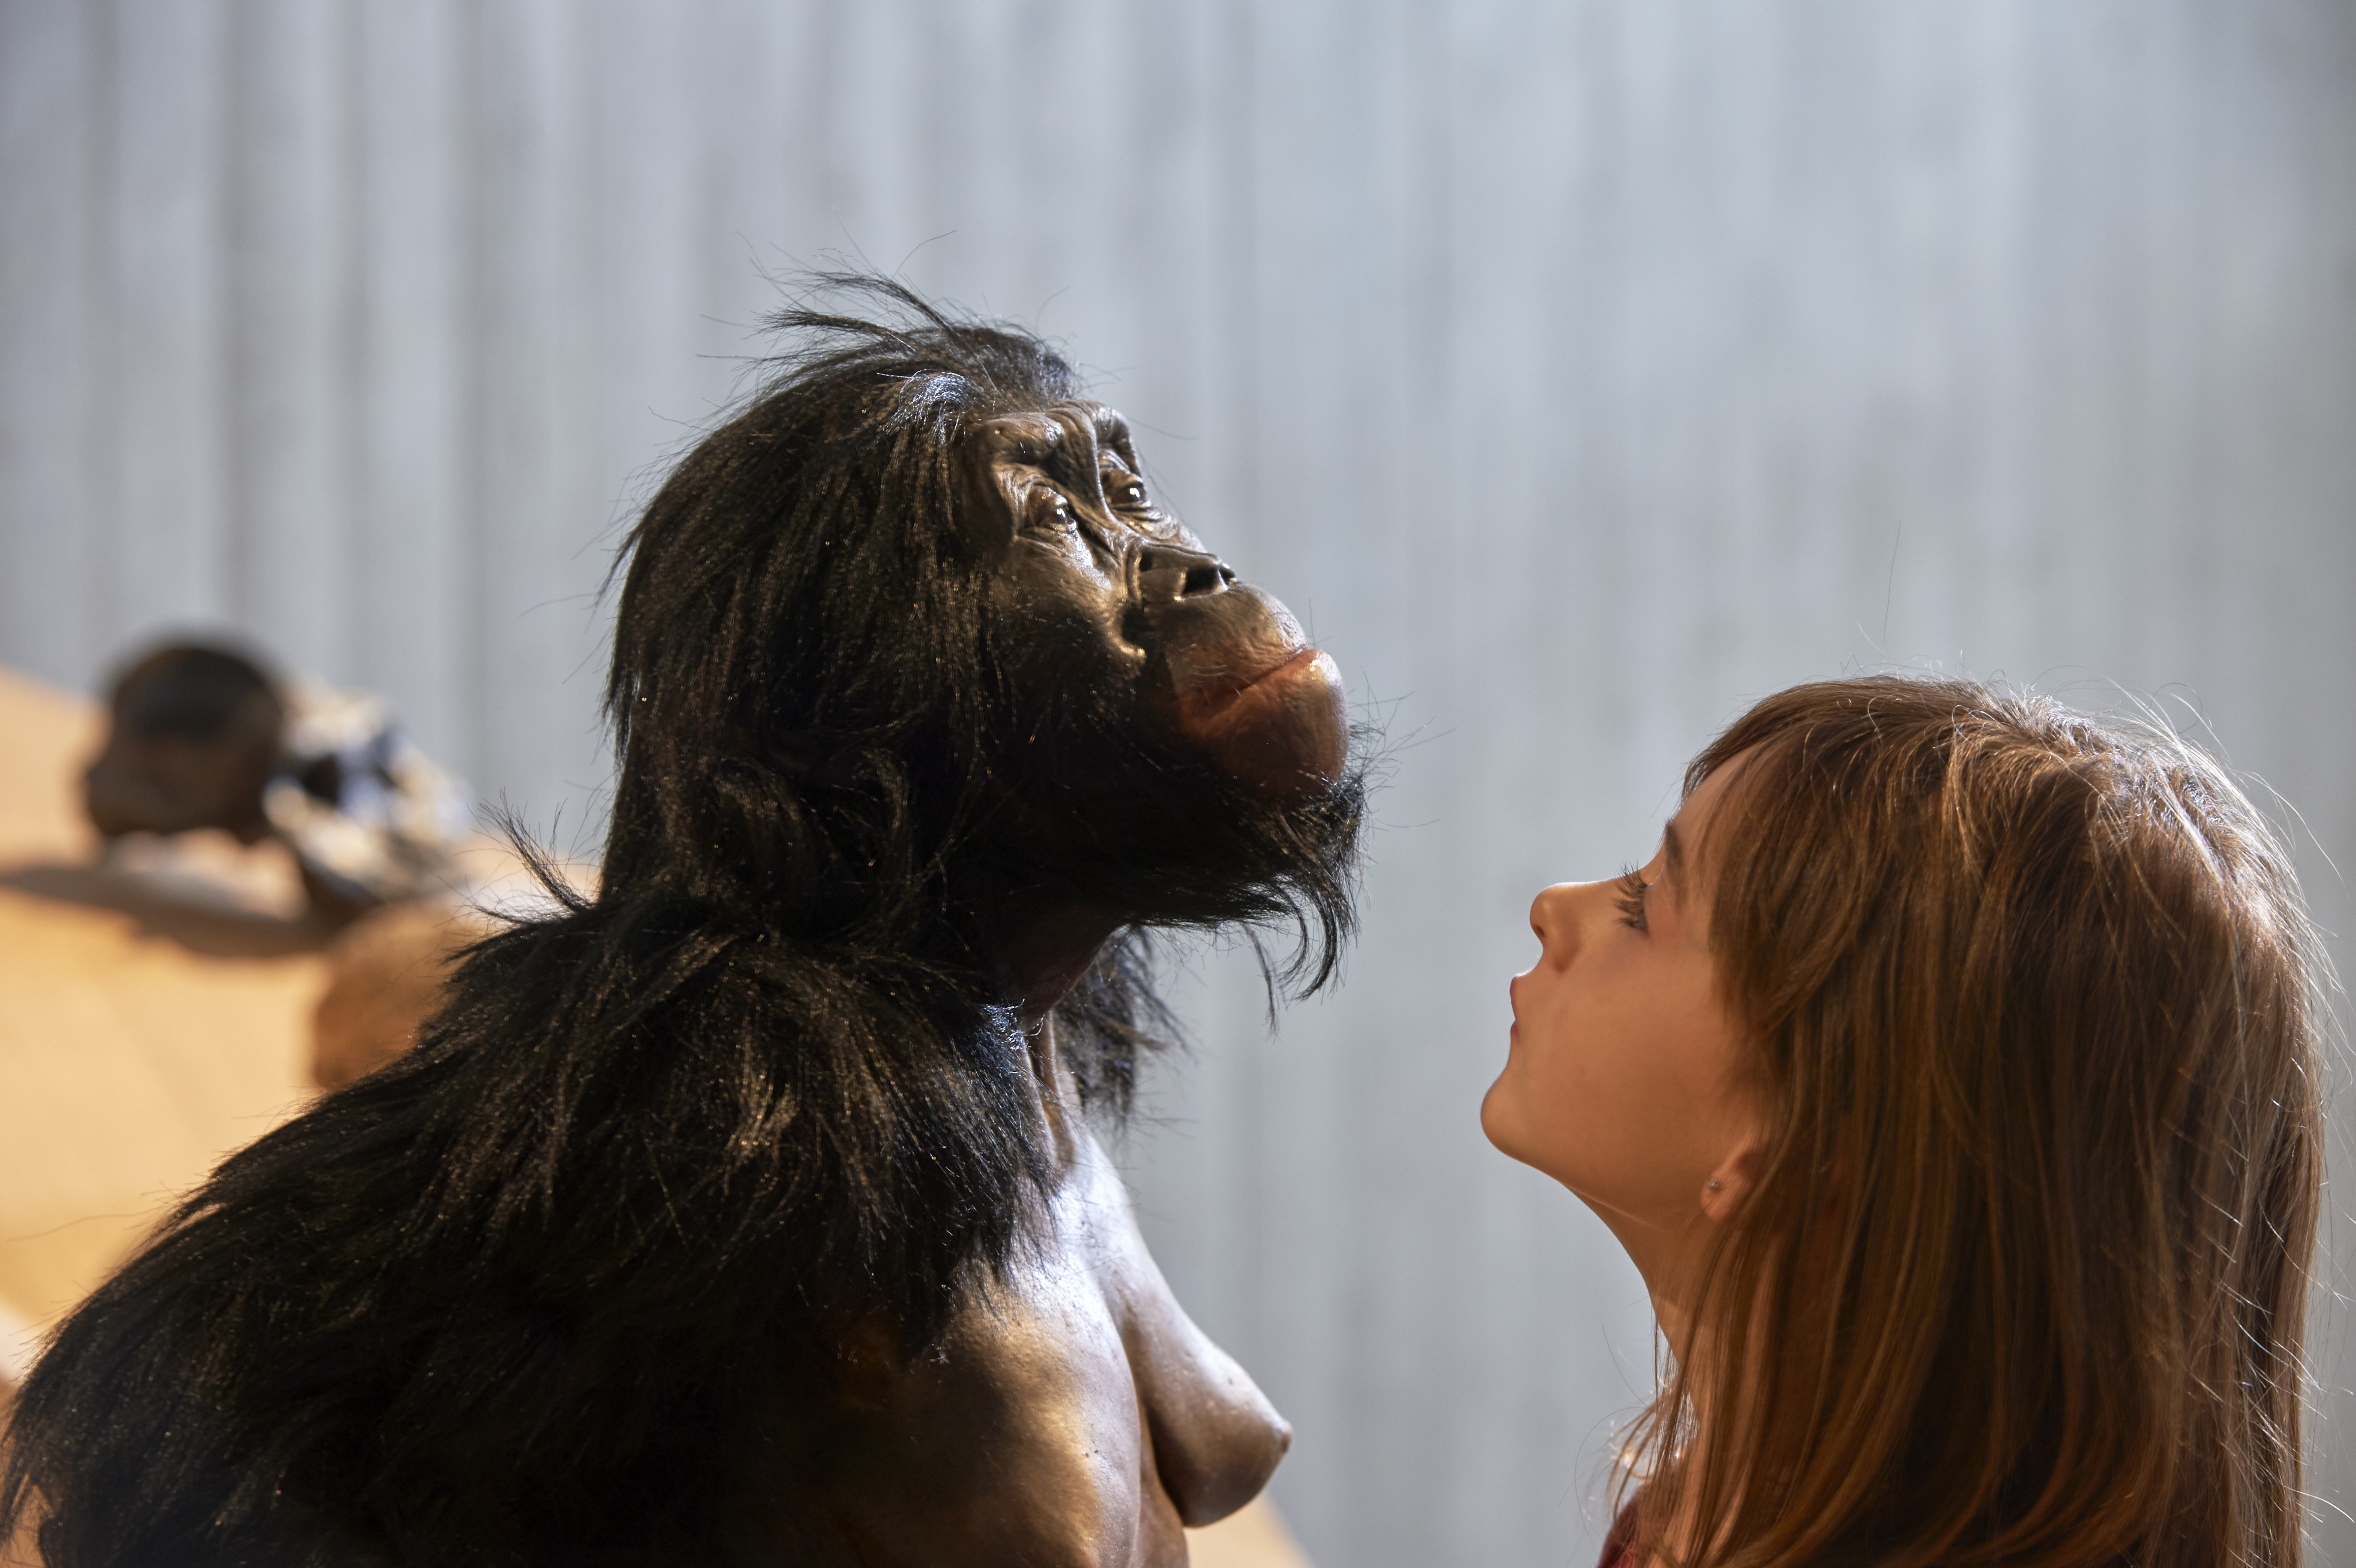 Living reconstruction of an Australopithecus afarensis